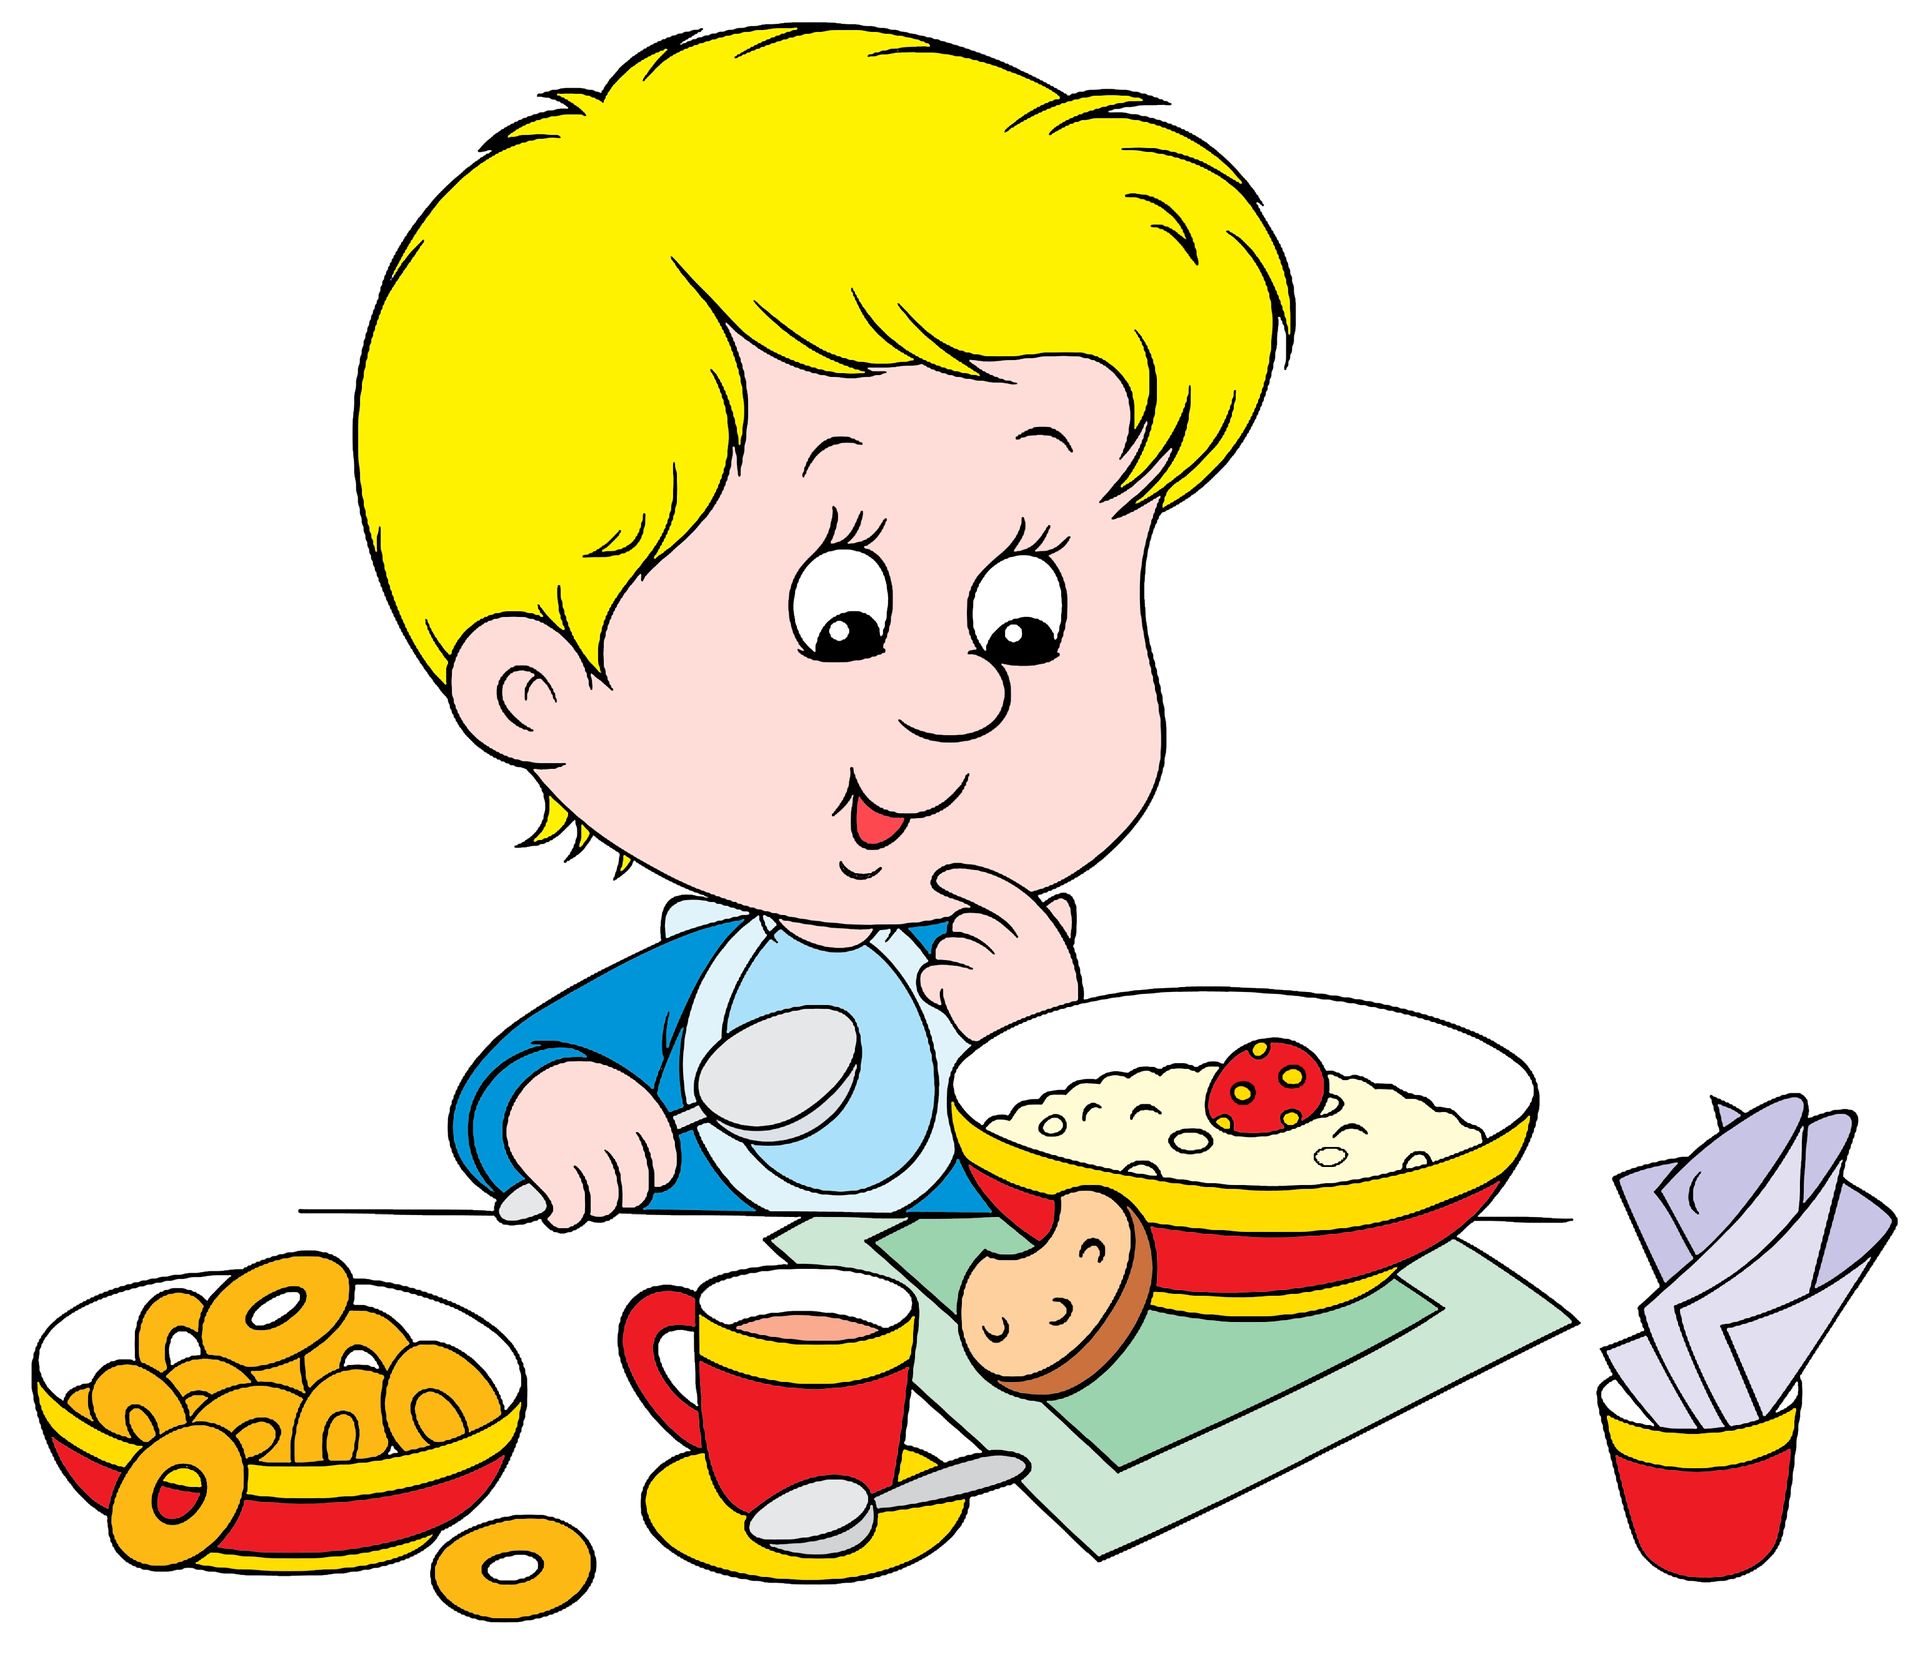 Питание для малышей. Завтрак детей в детском саду. Прием пищи в детском саду. Обед картинка для детей. Дети и питание иллюстрации.